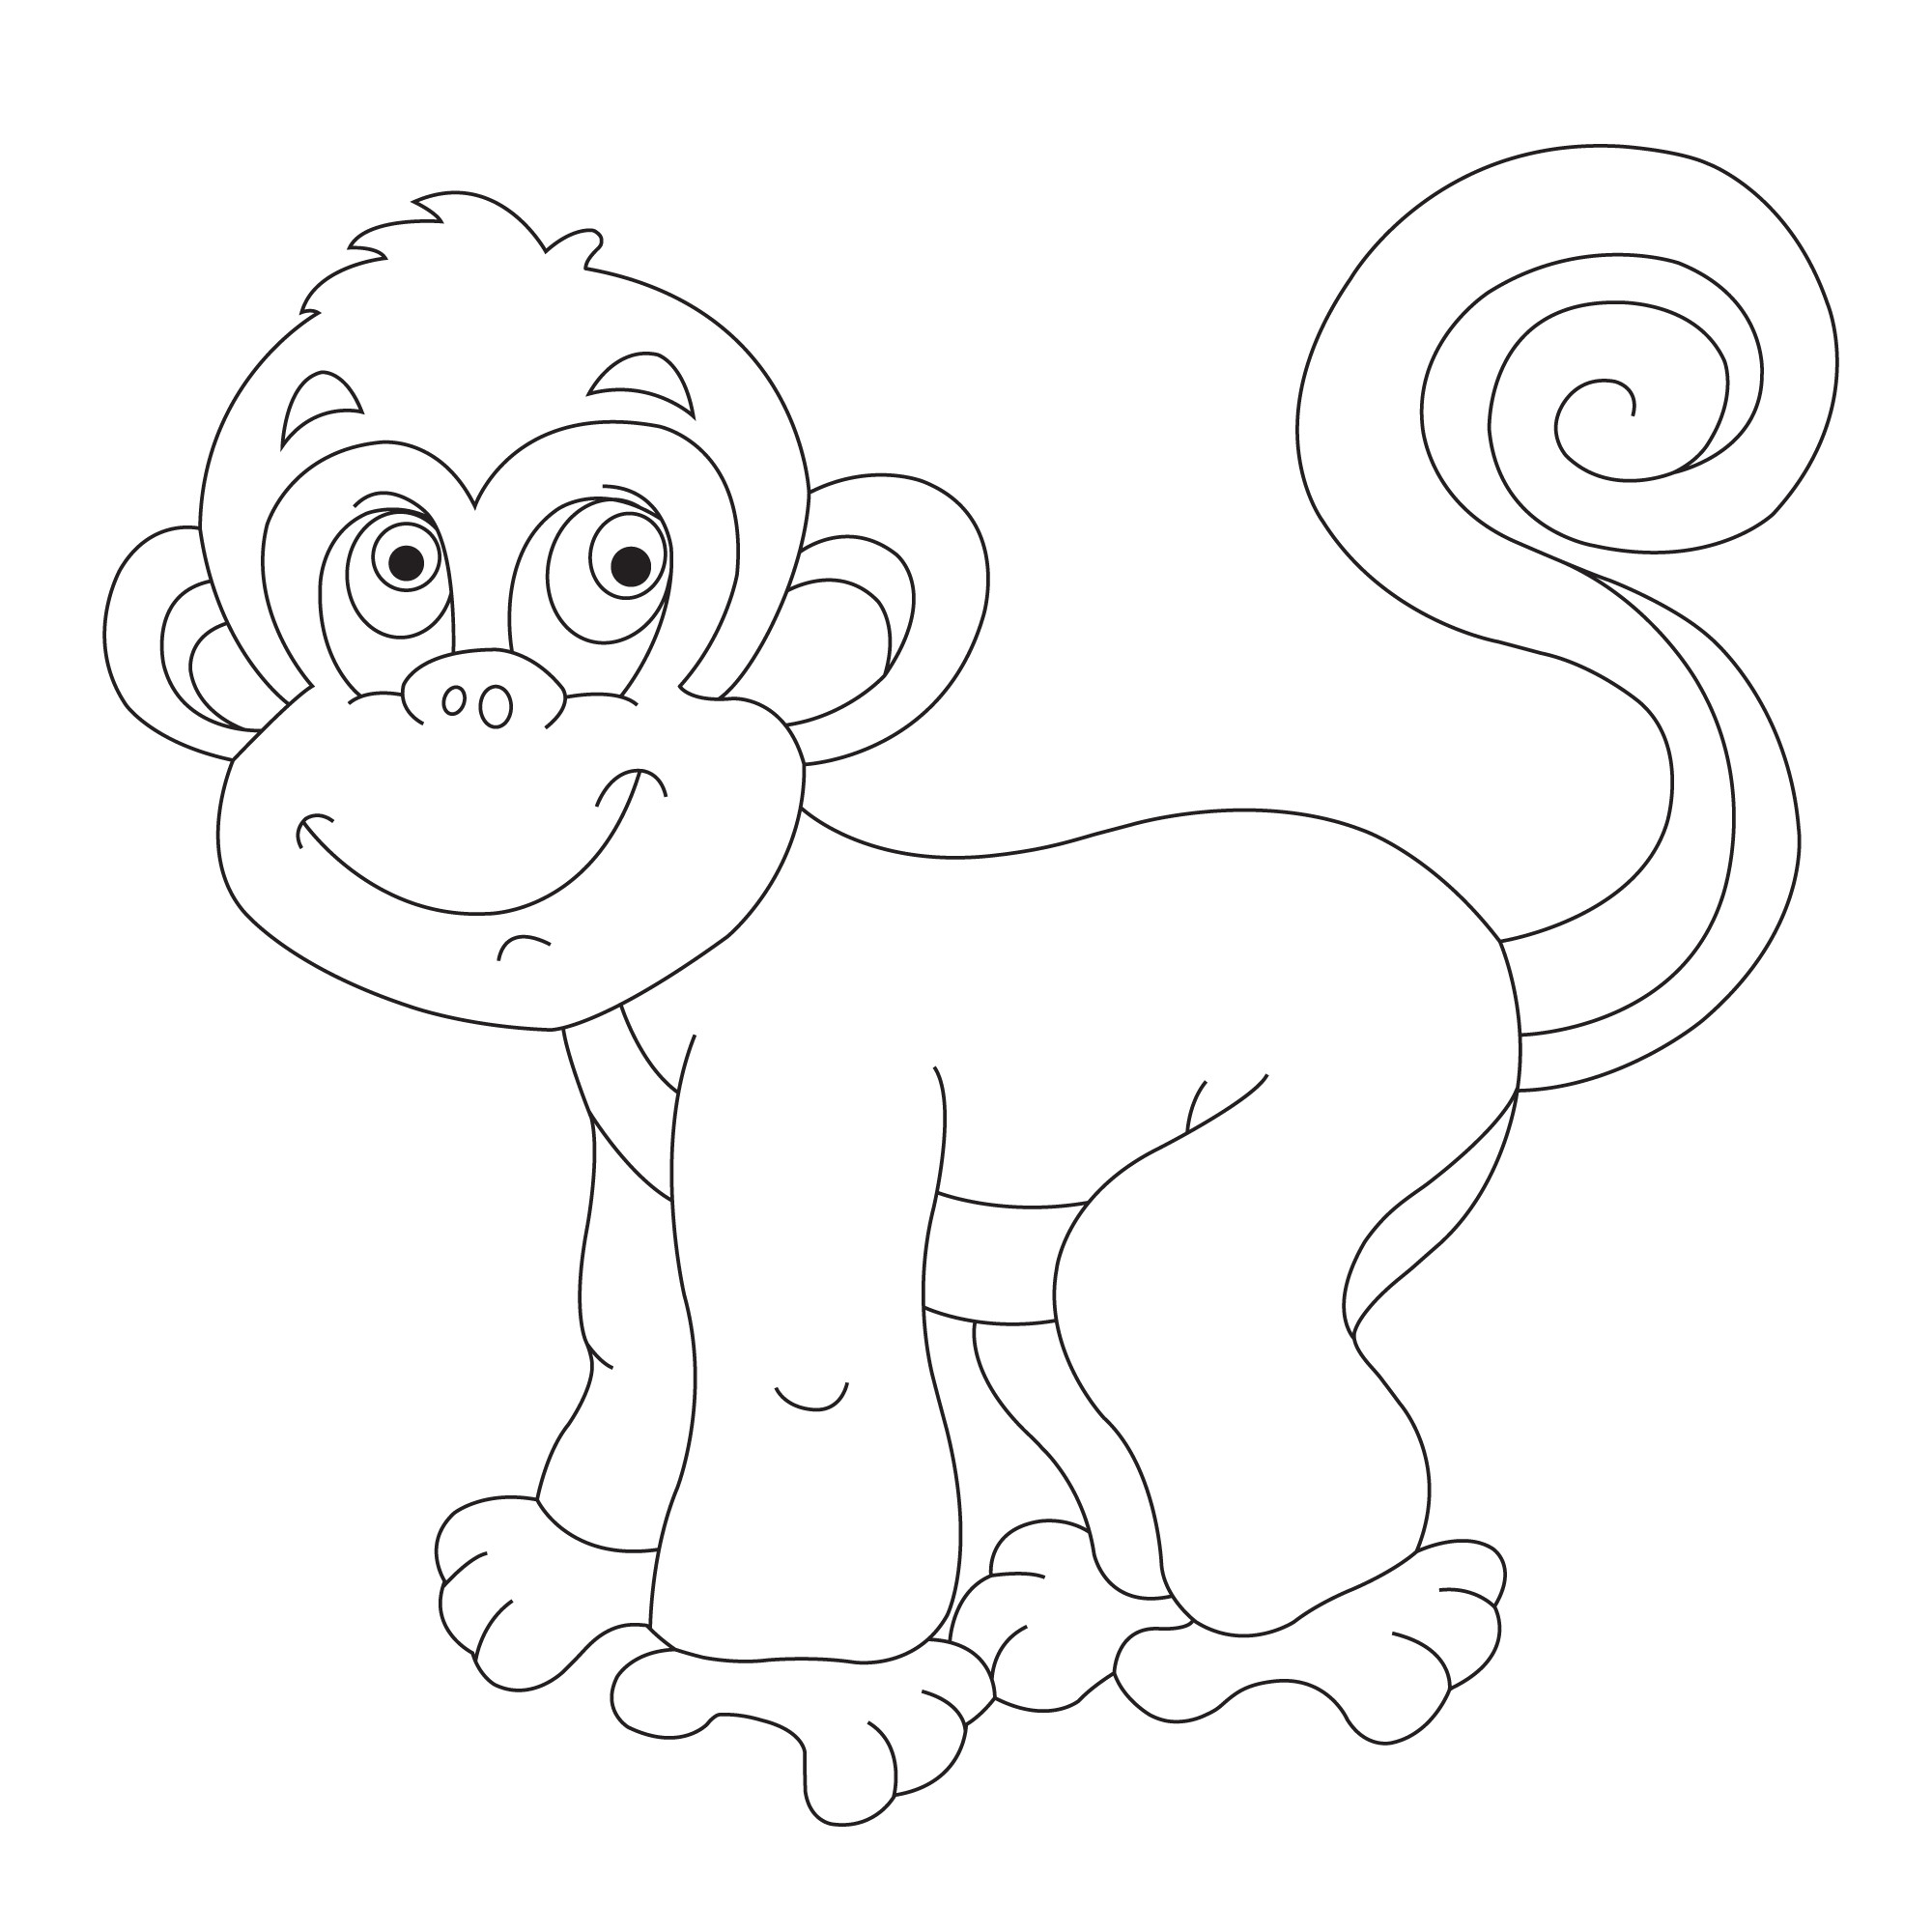 Раскраска для детей: обезьяна с длинным хвостиком и красивыми глазами